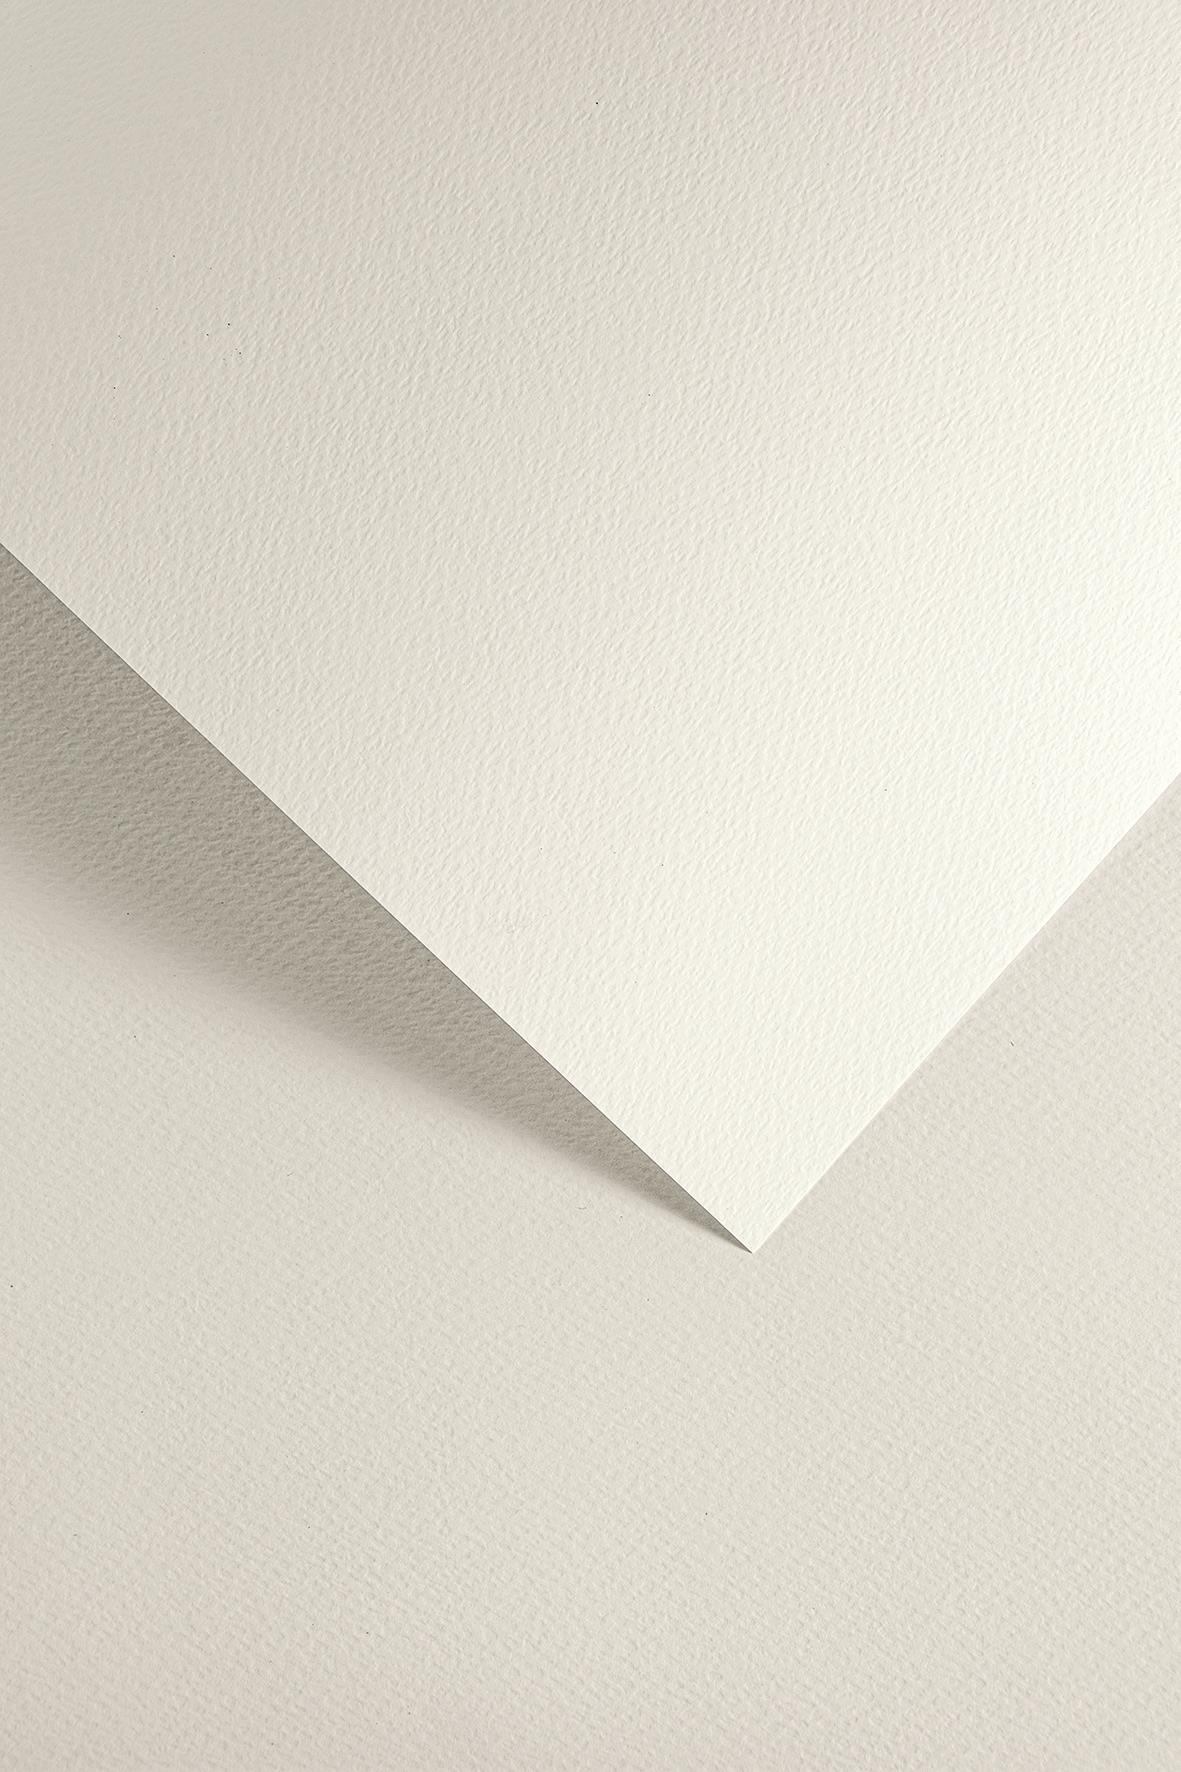 Galeria Papieru ozdobný papír Sawanna bílá 200g, 20ks